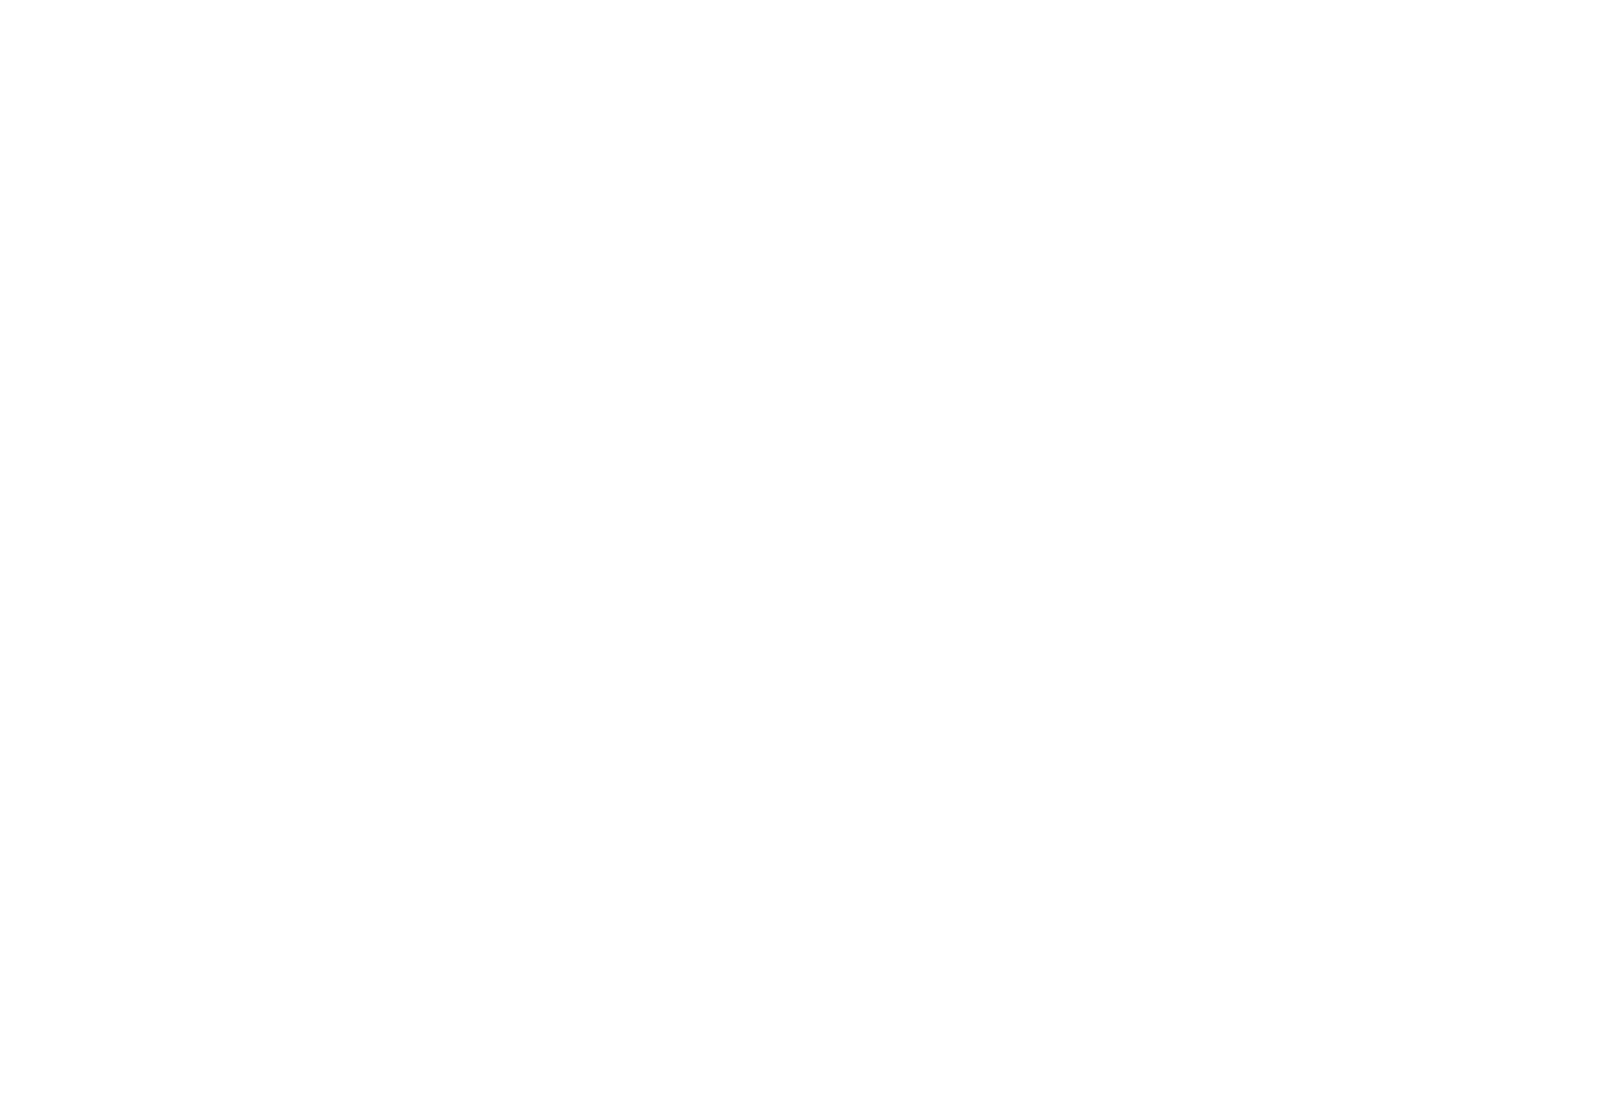 海蔵亮太「愛のカタチ」×岡野雄一「ペコロスの母に会いに行く」コラボMV公開サムネイル画像!